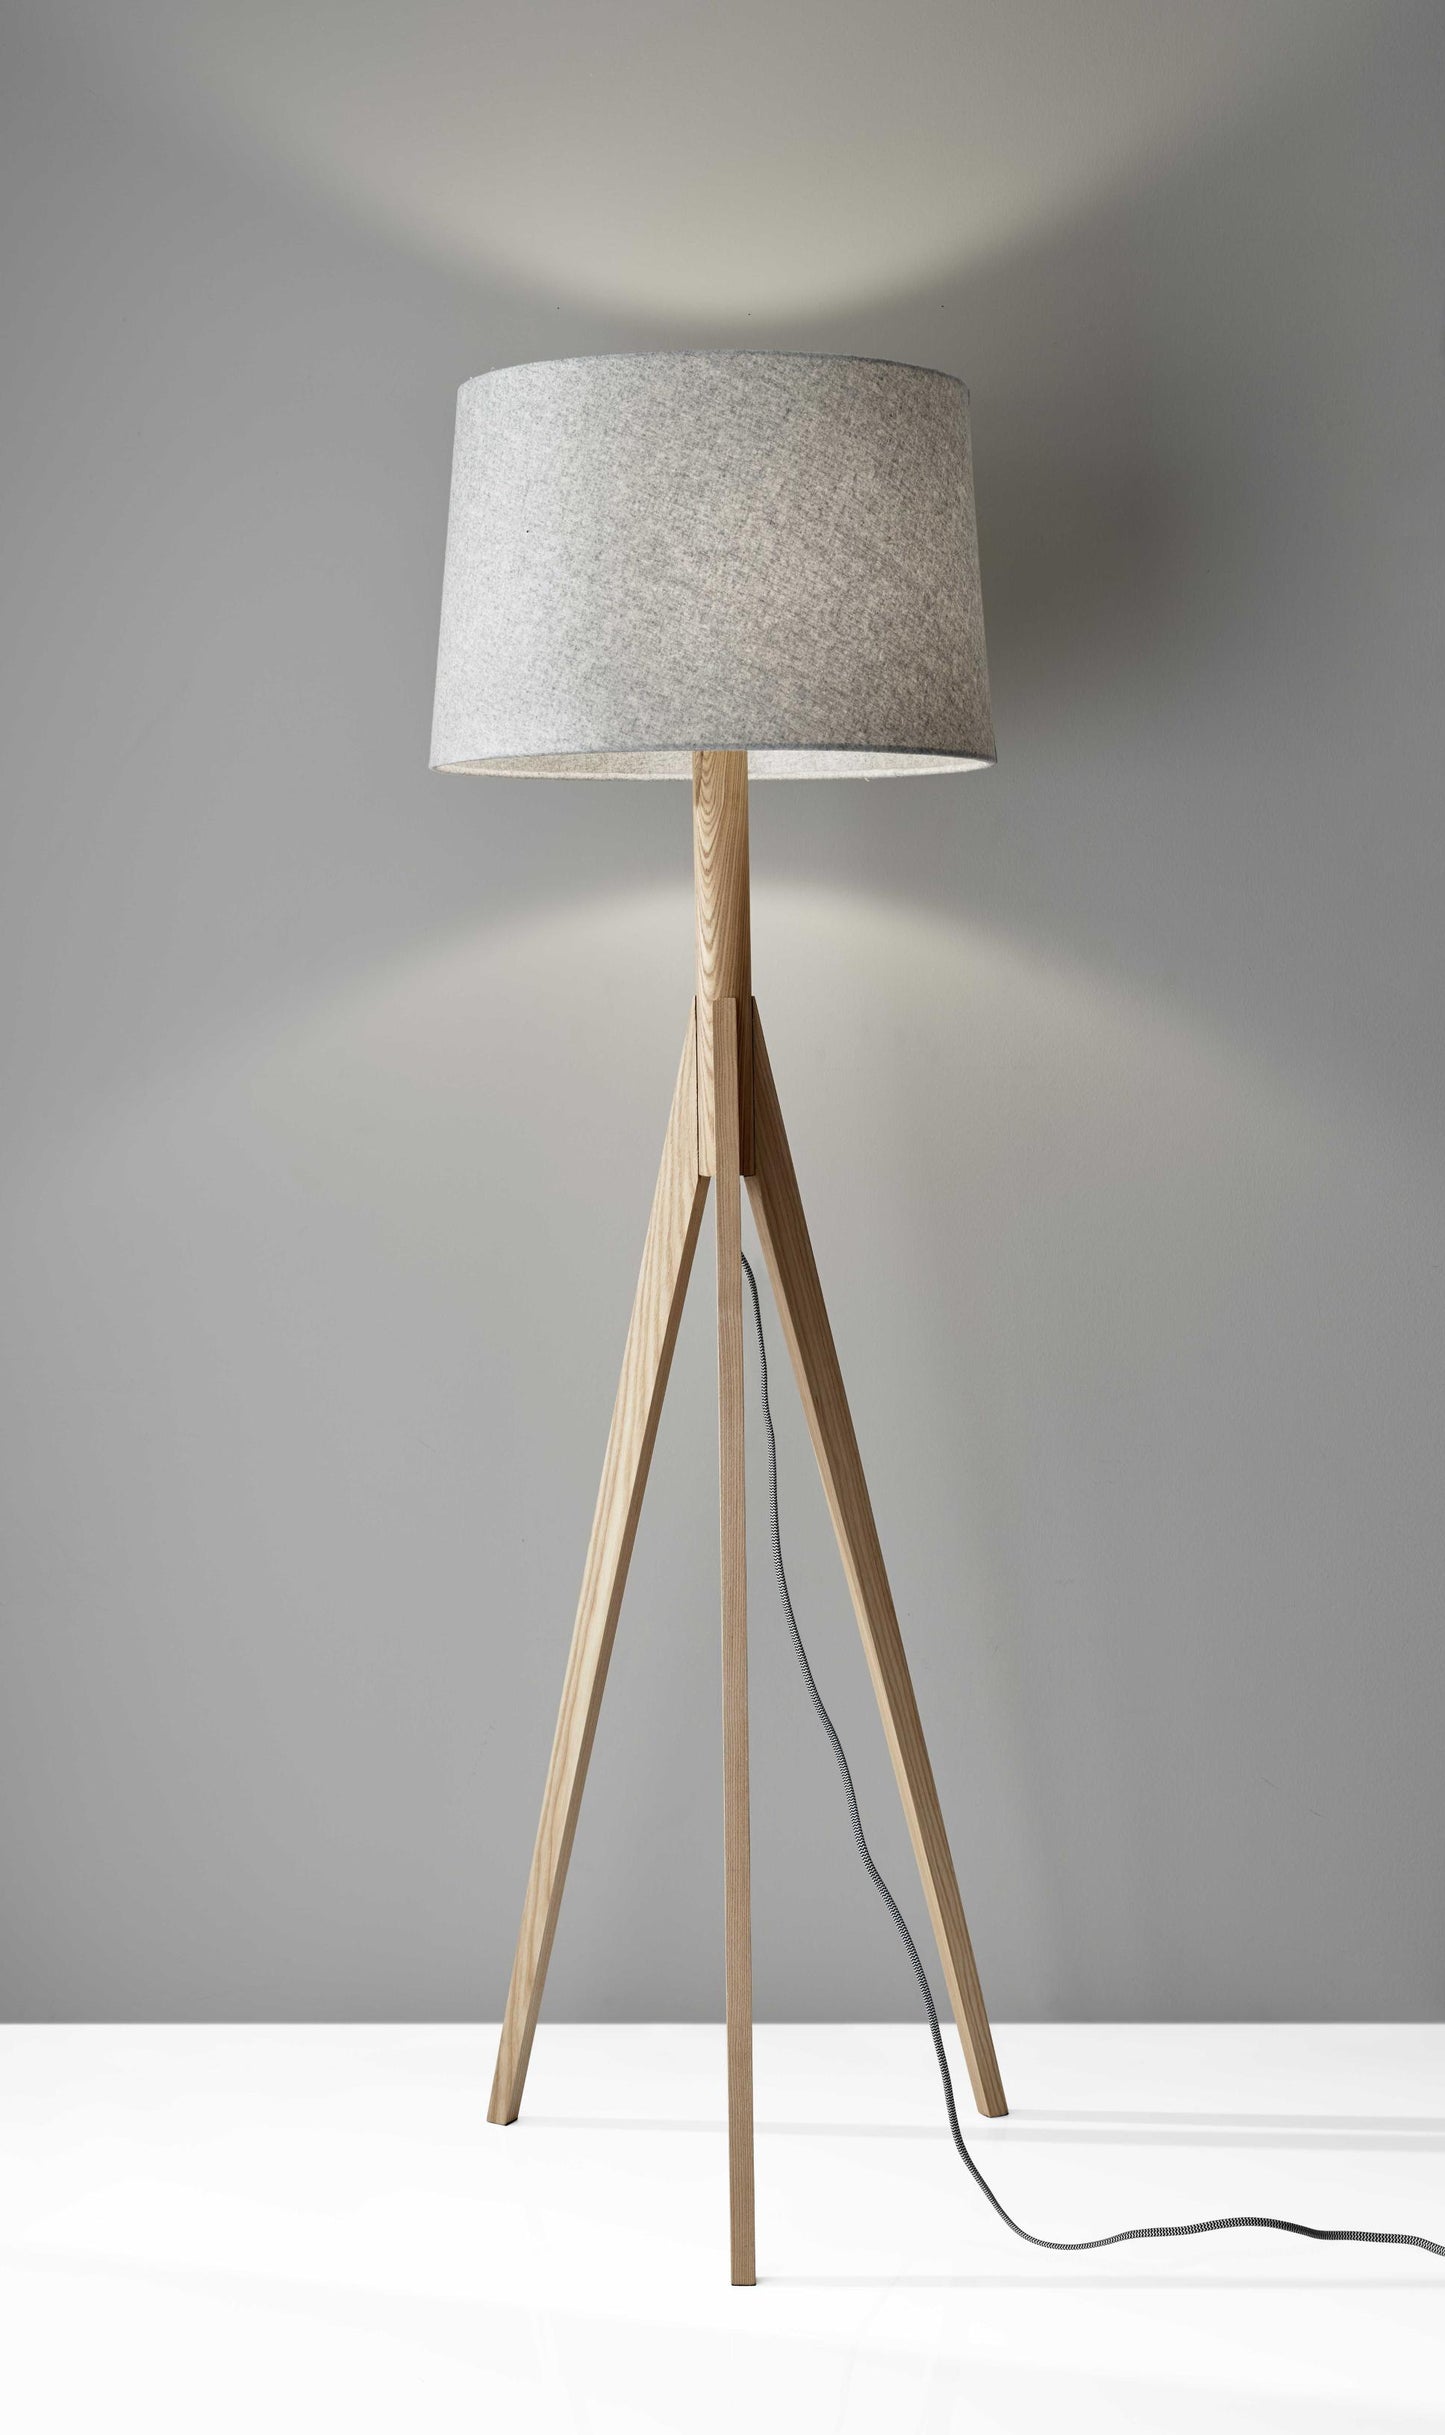 18" X 18" X 59.25" Natural Wood Floor Lamp